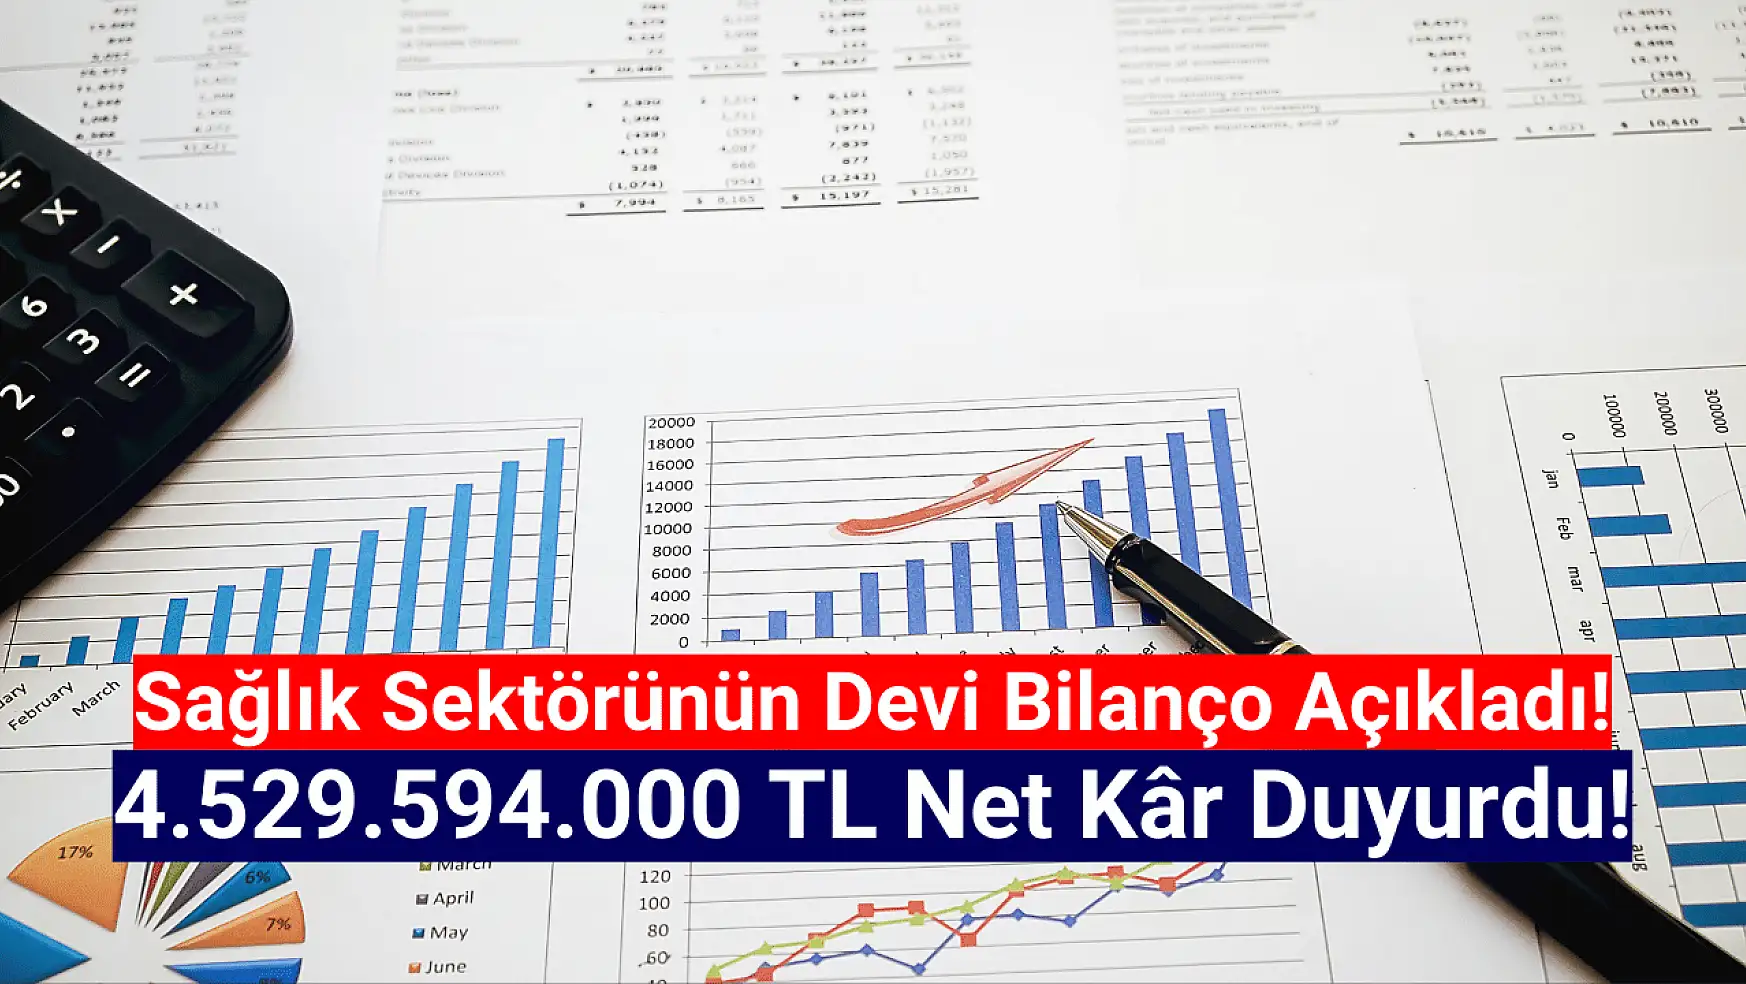 Dev şirket 4.529.594.000 TL net kâr açıkladı!